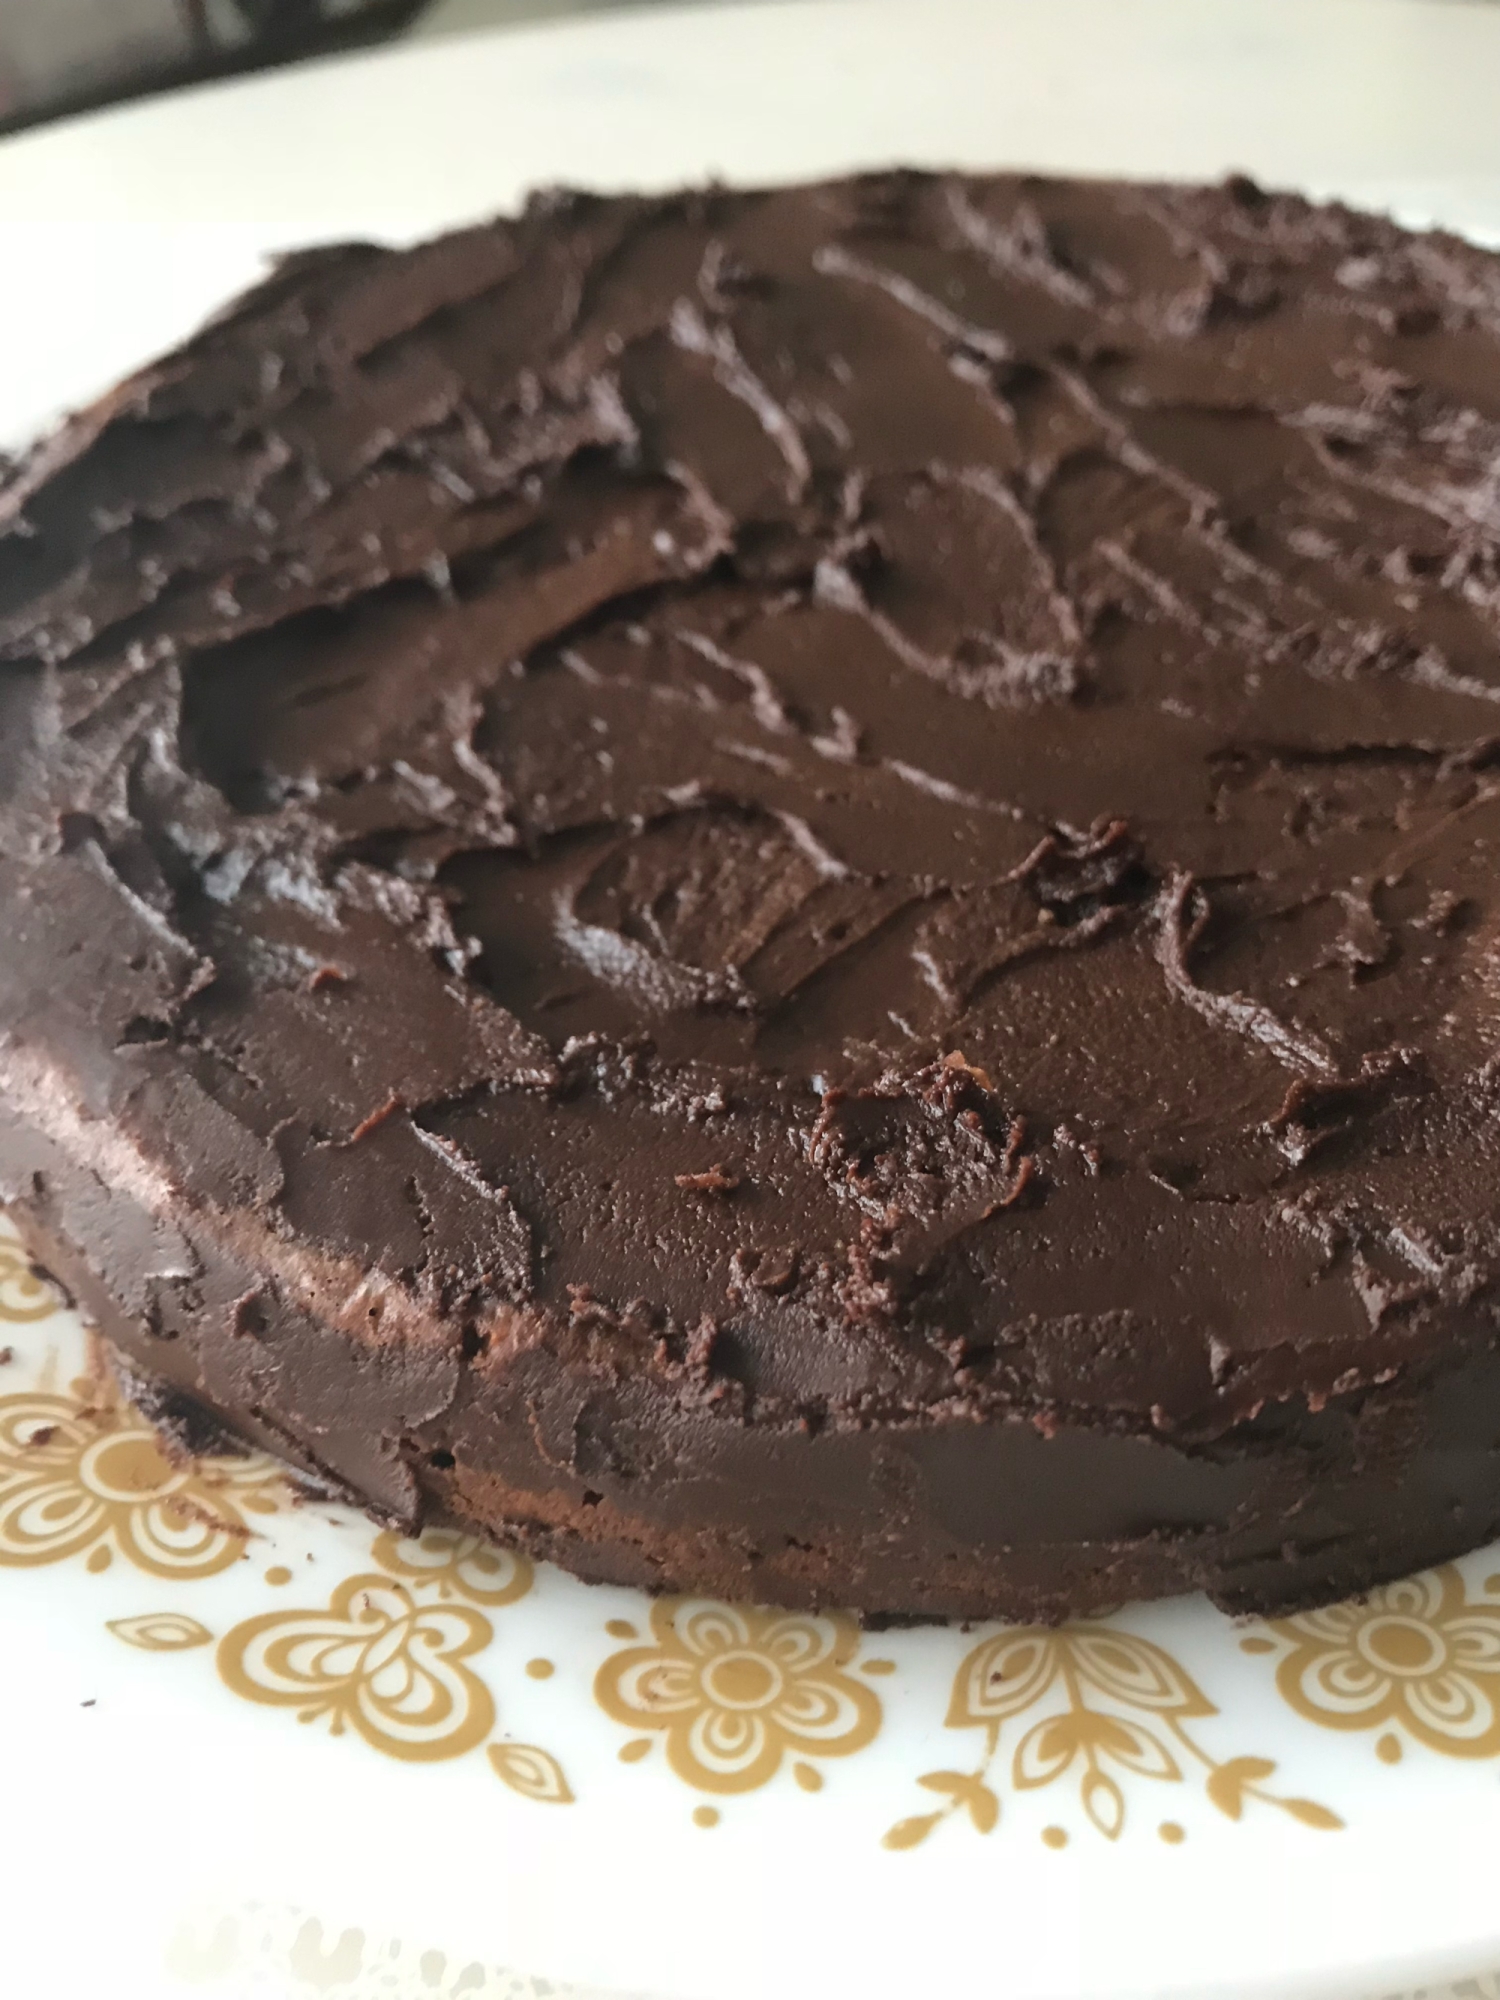 チョコたっぷりチョコレートケーキ